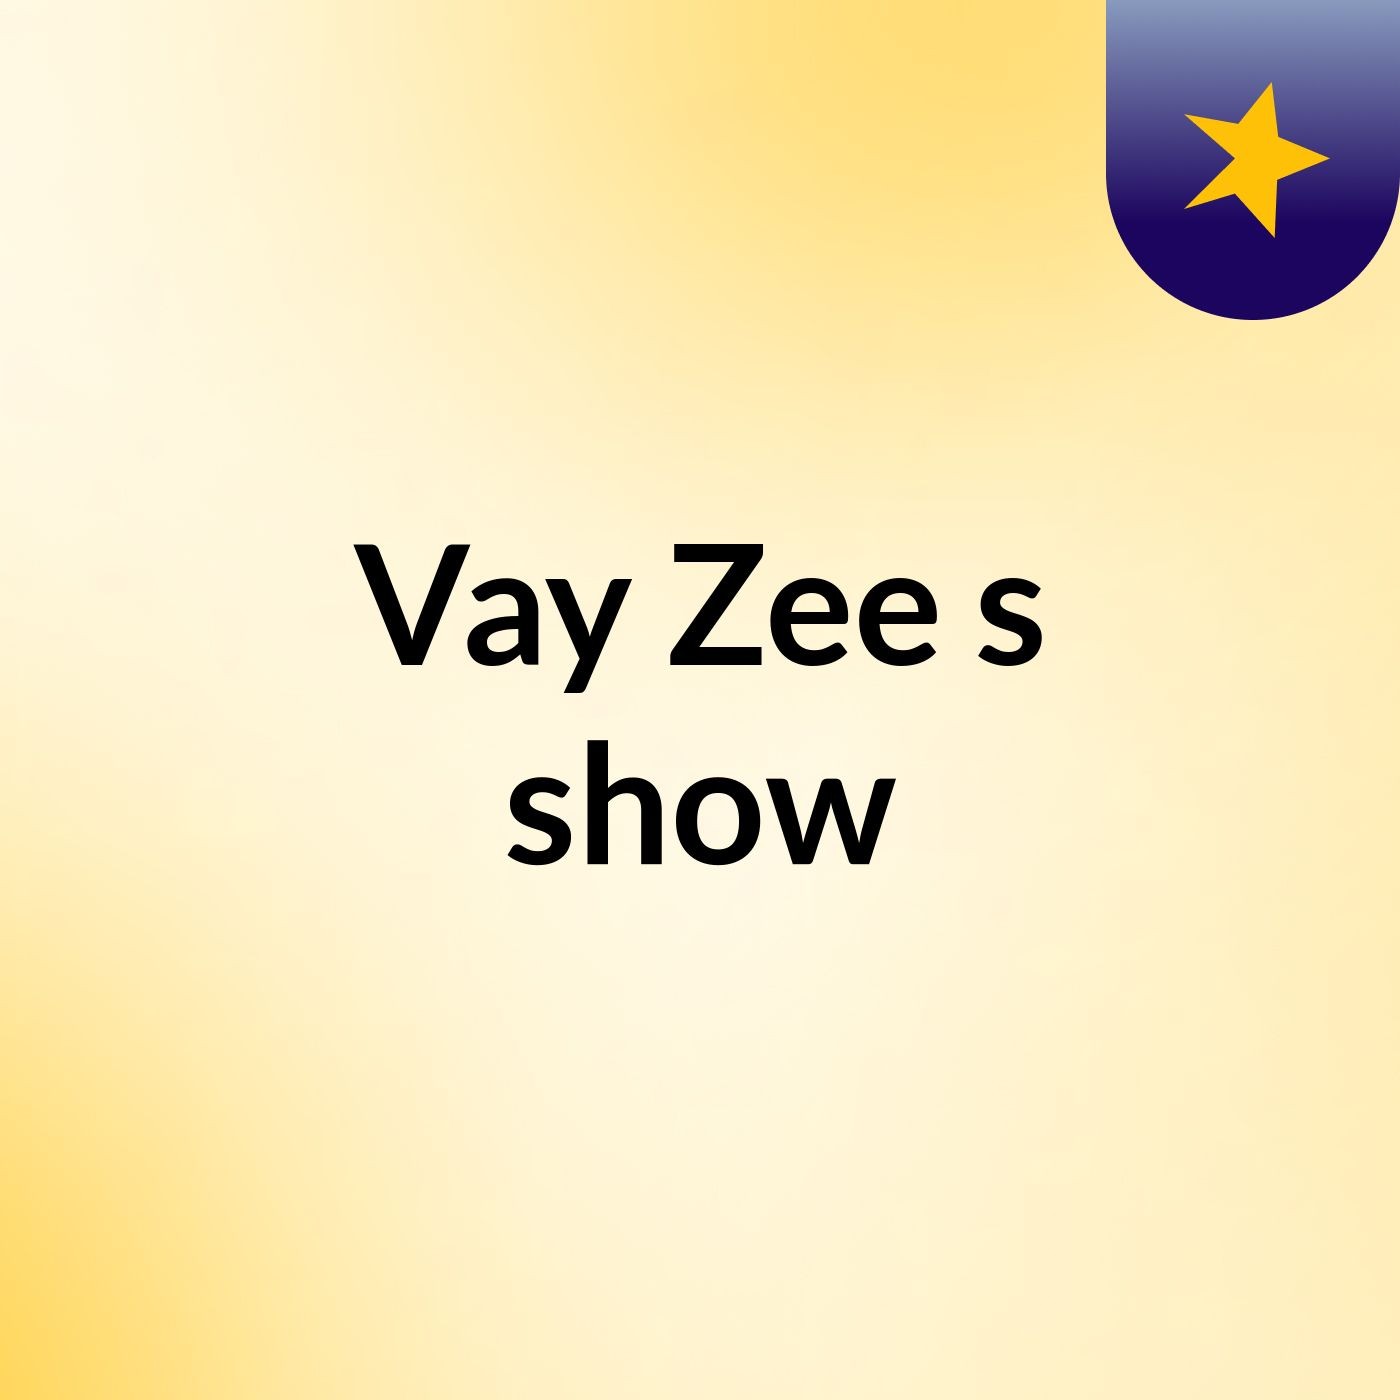 Vay Zee's show